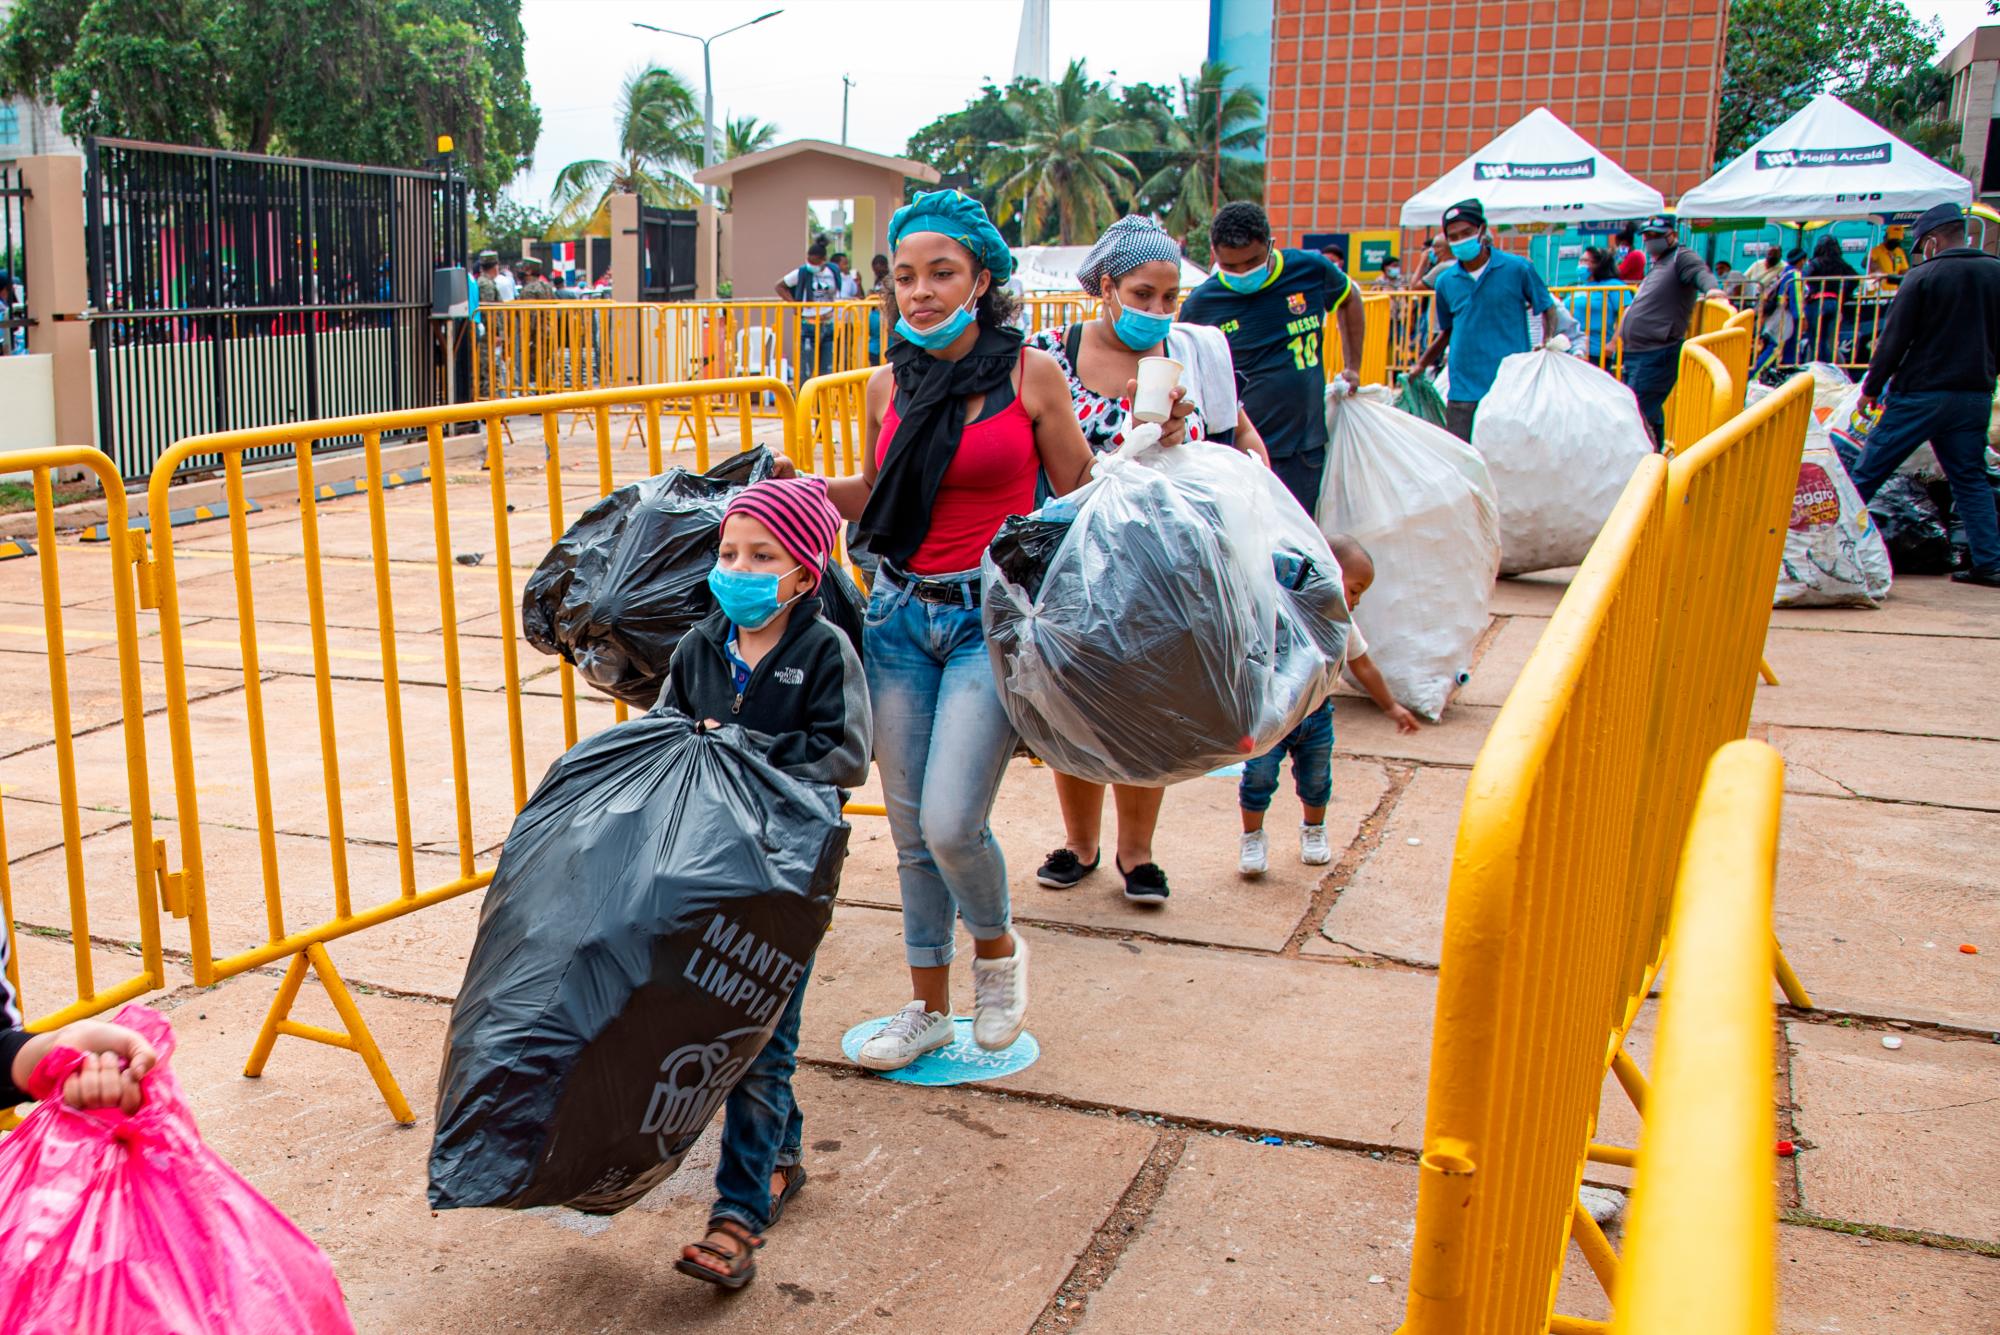 La alcaldesa Carolina Mejía recibió a cientos de niñas y niños acompañados de sus familiares quienes acudieron al Palacio Municipal a canjear botellas plásticas por juguetes. (Dania Acevedo / Diario Libre)